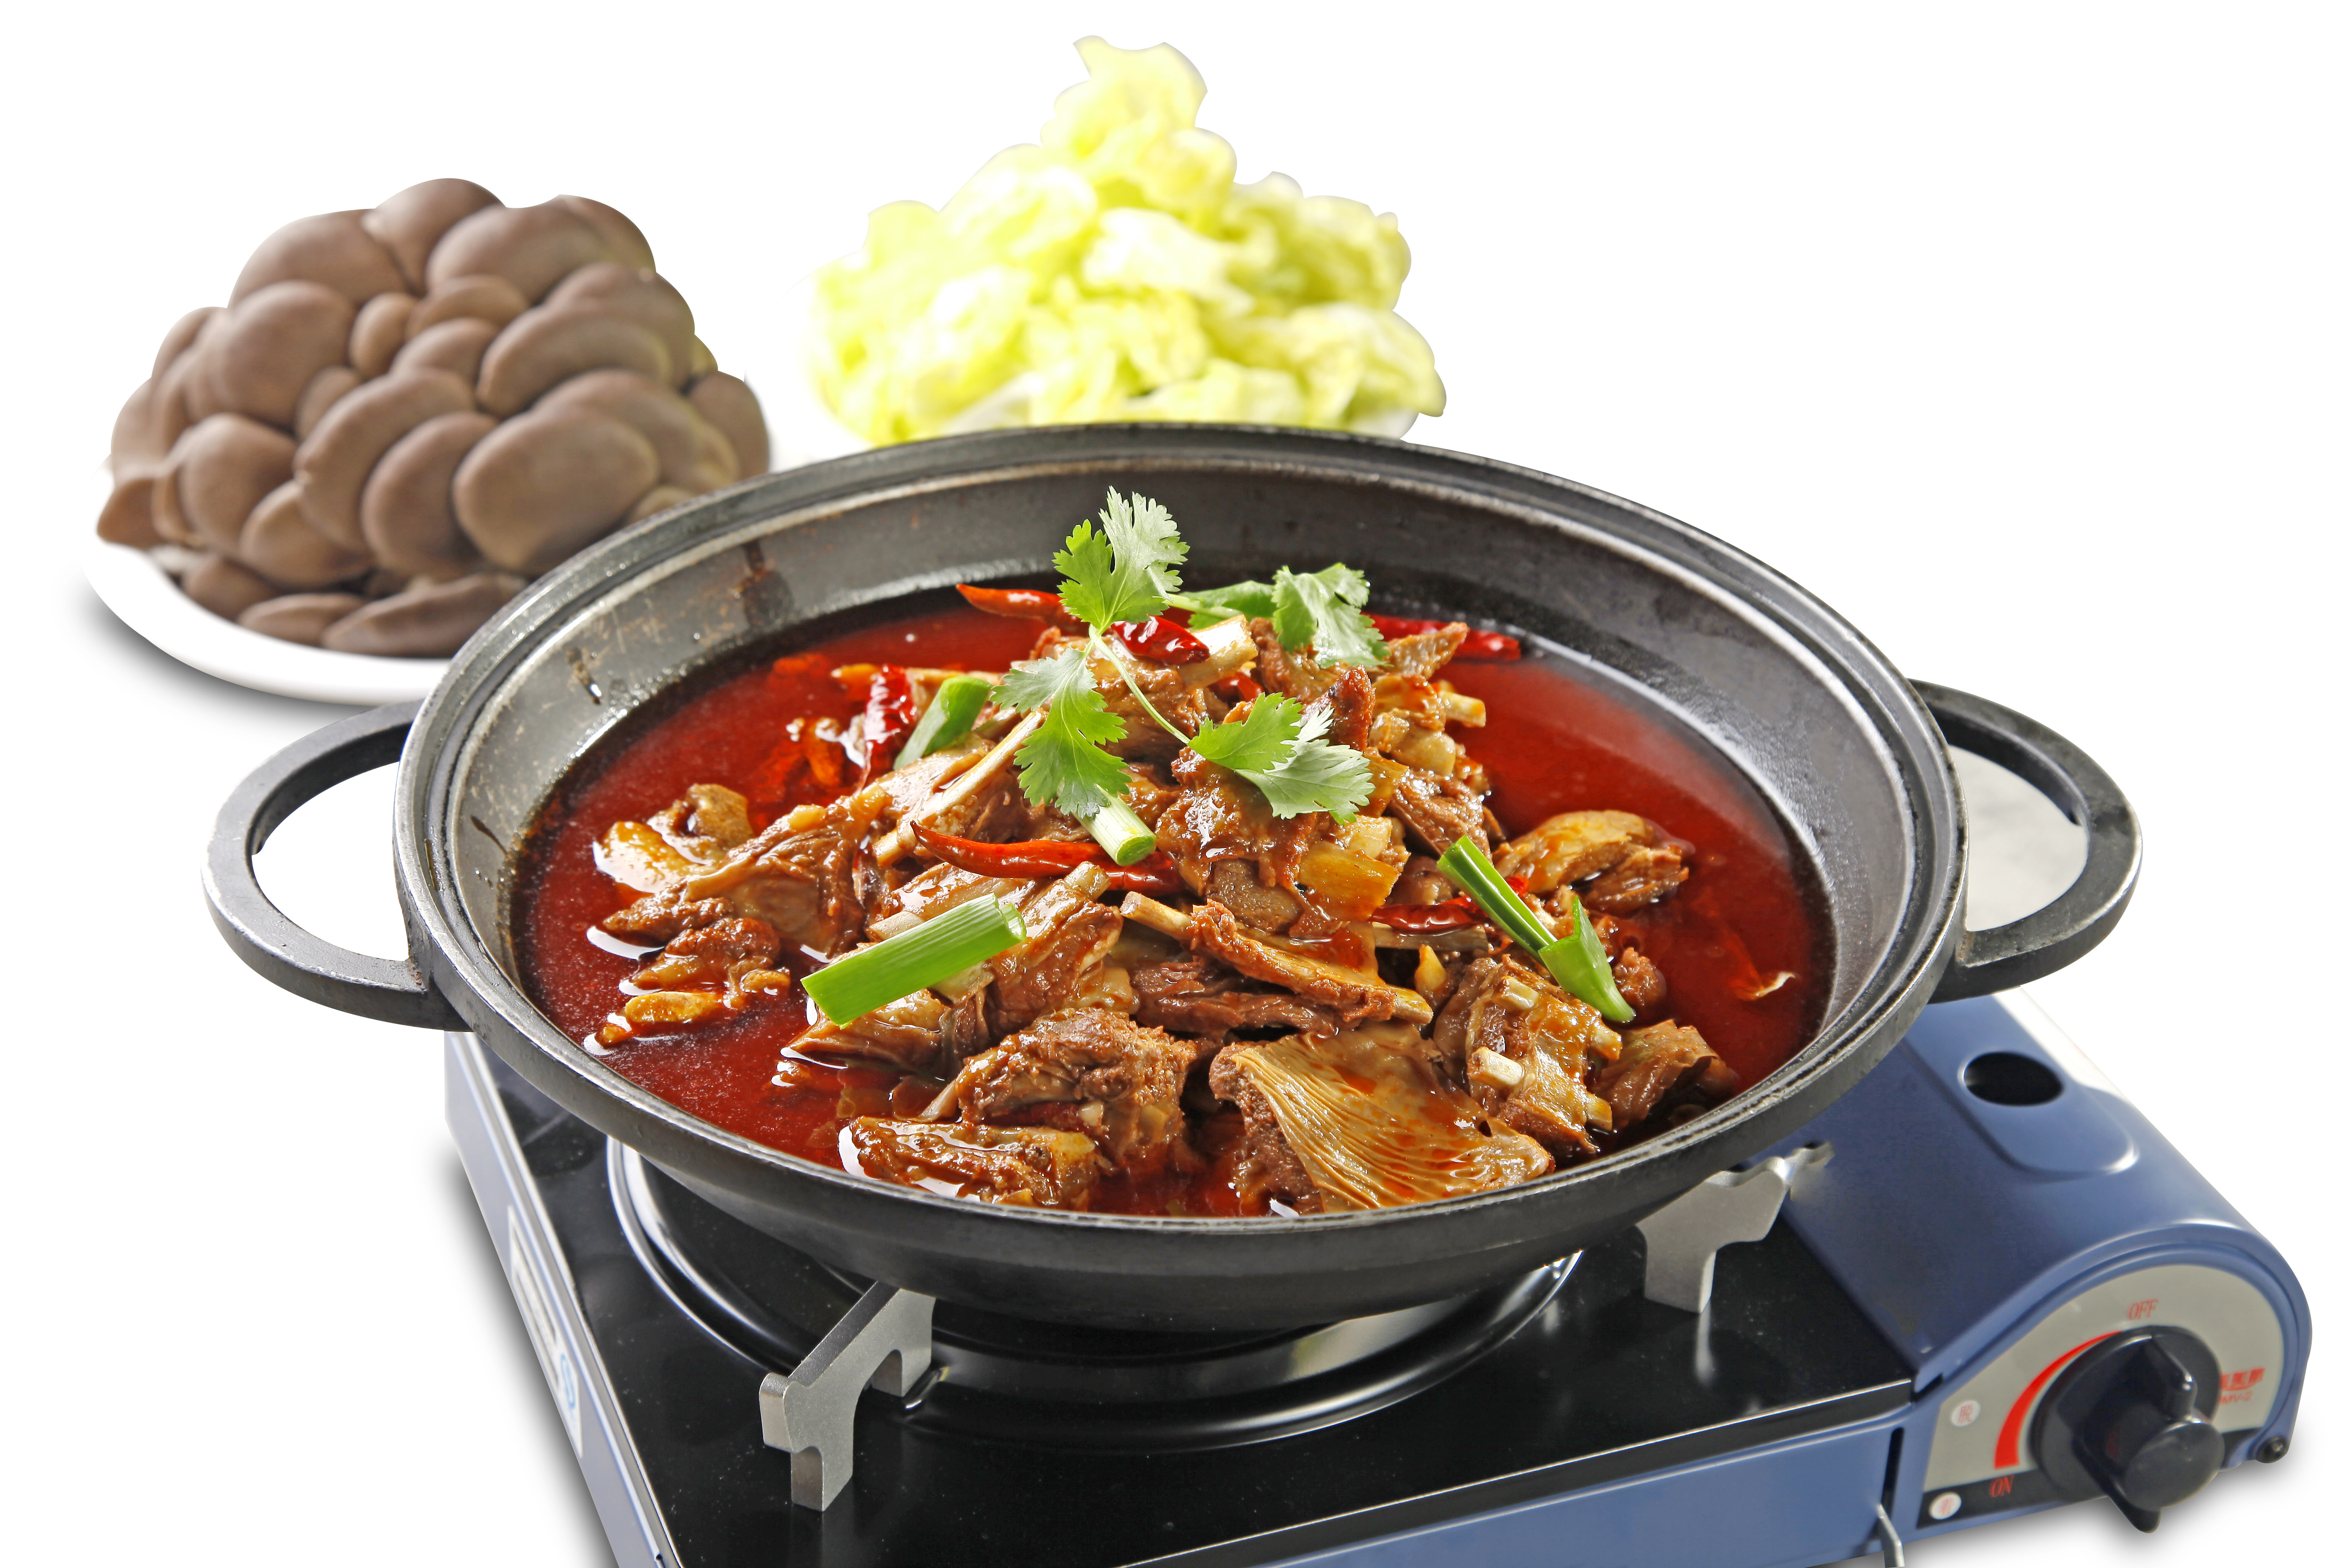 成师傅红焖羊肉:30年经典菜,2003年被评为中华名吃,选用不超过20公斤